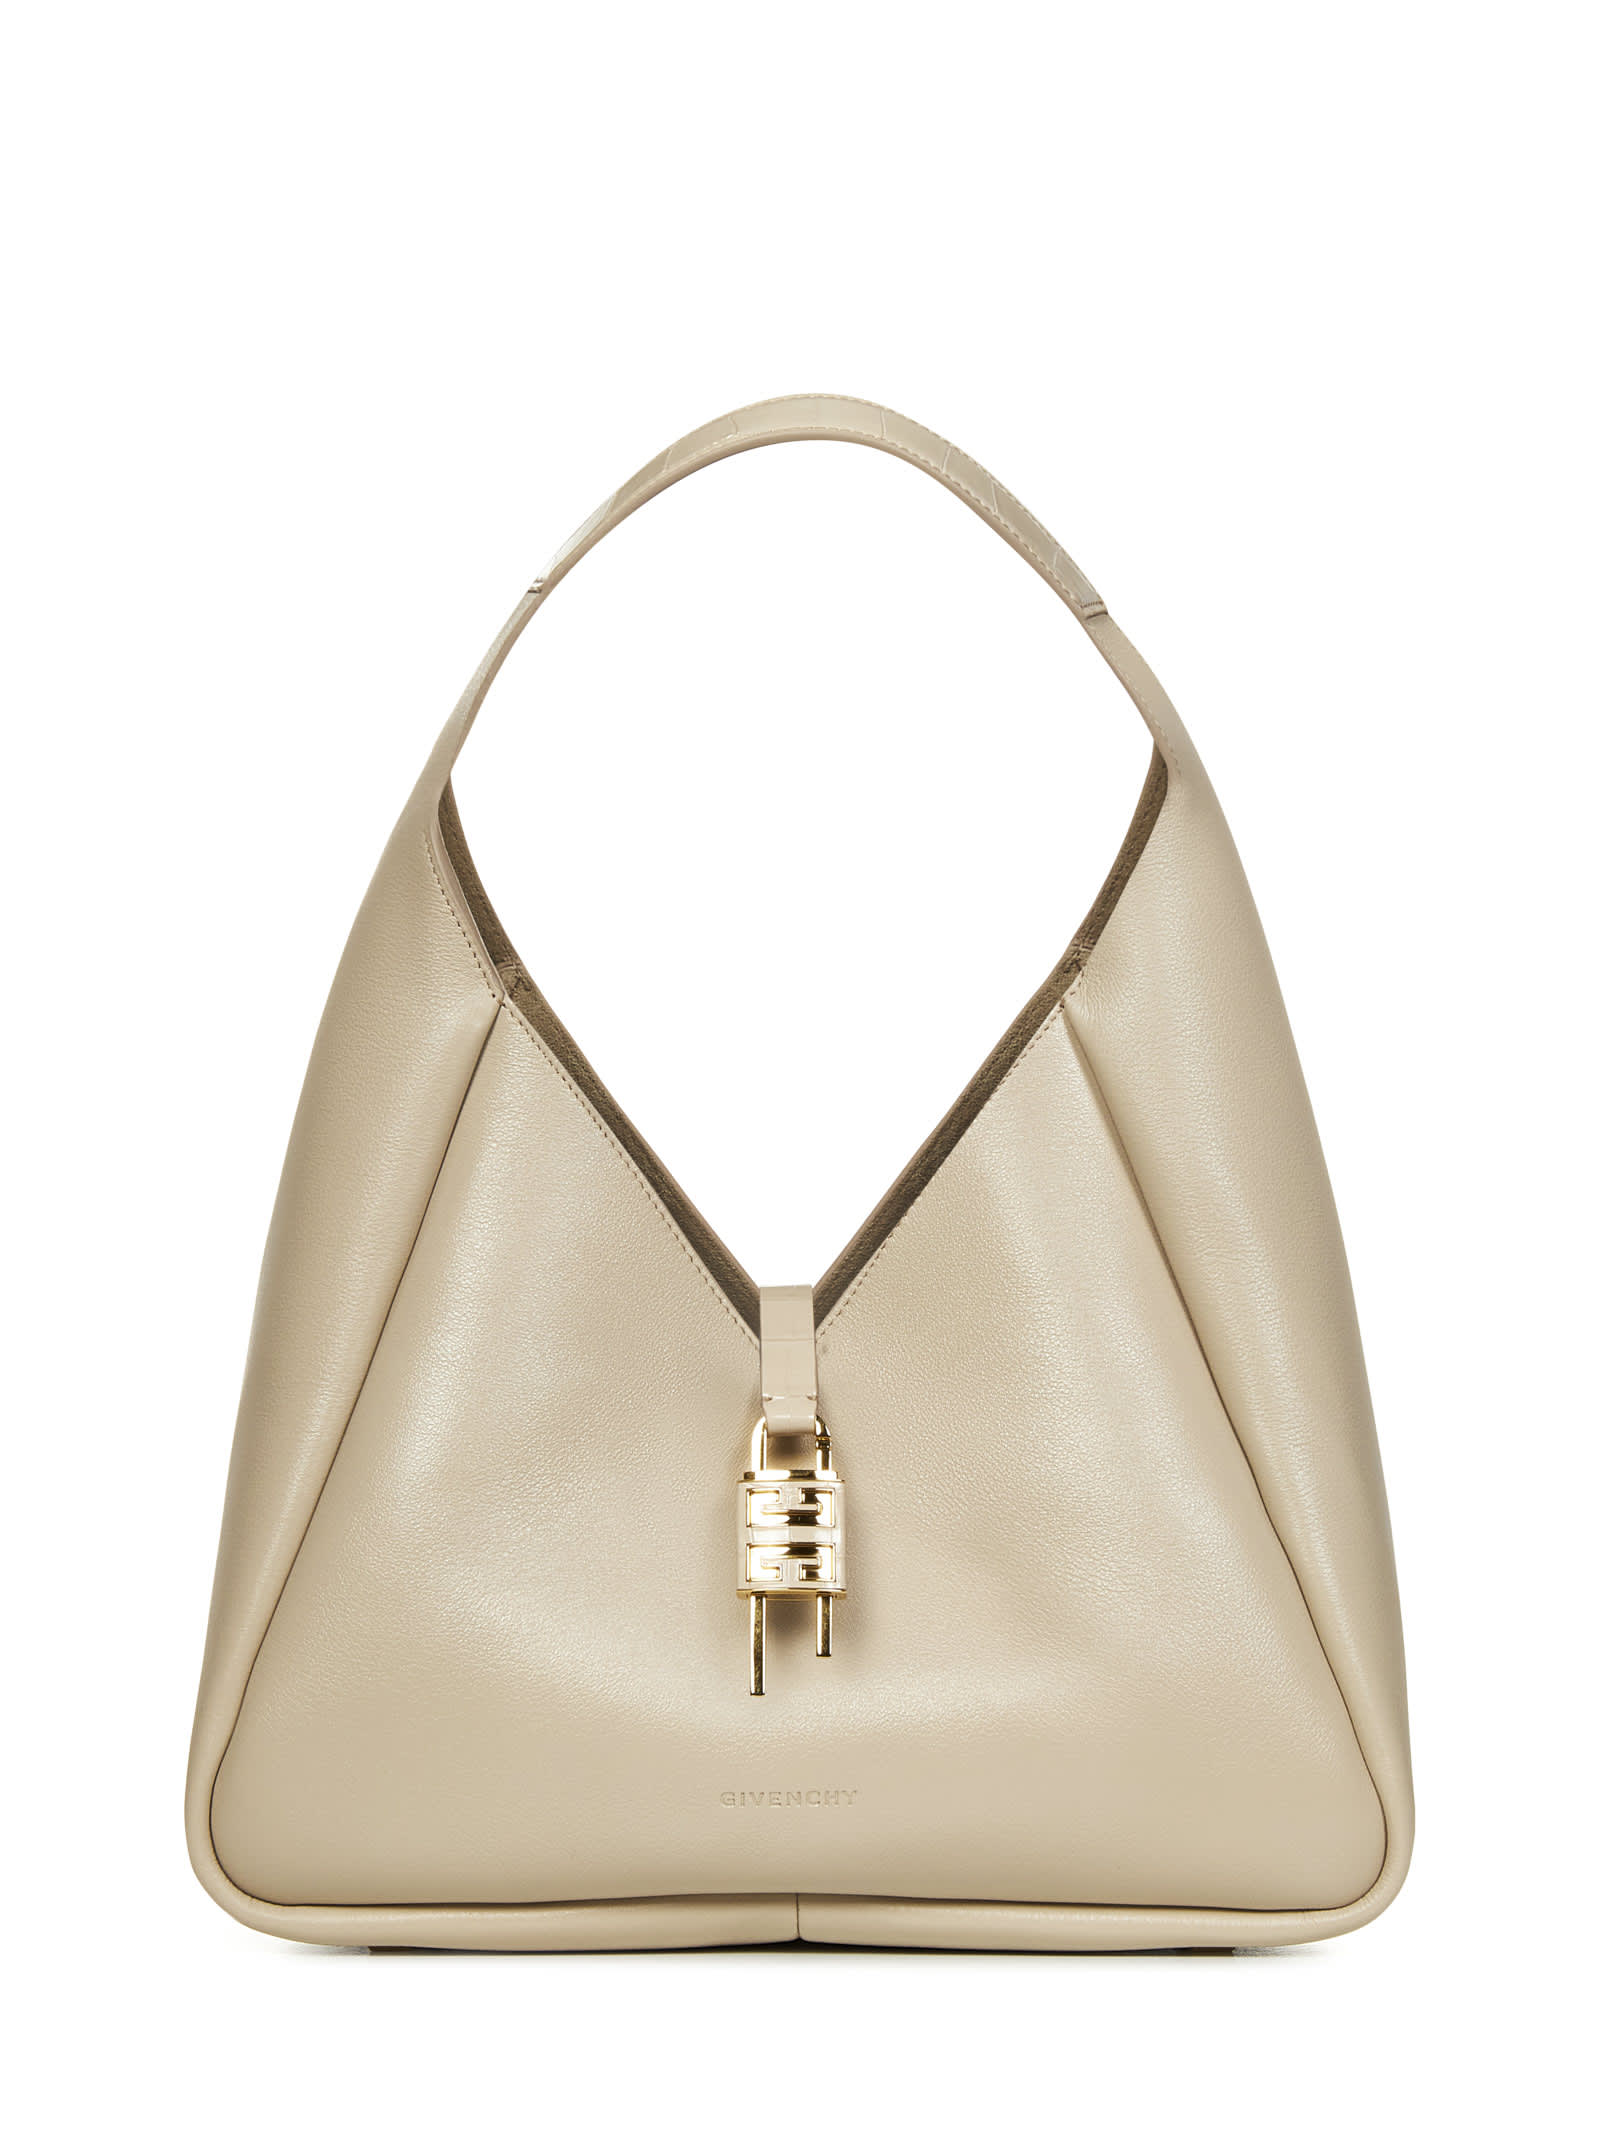 Givenchy G-hobo Medium Shoulder Bag